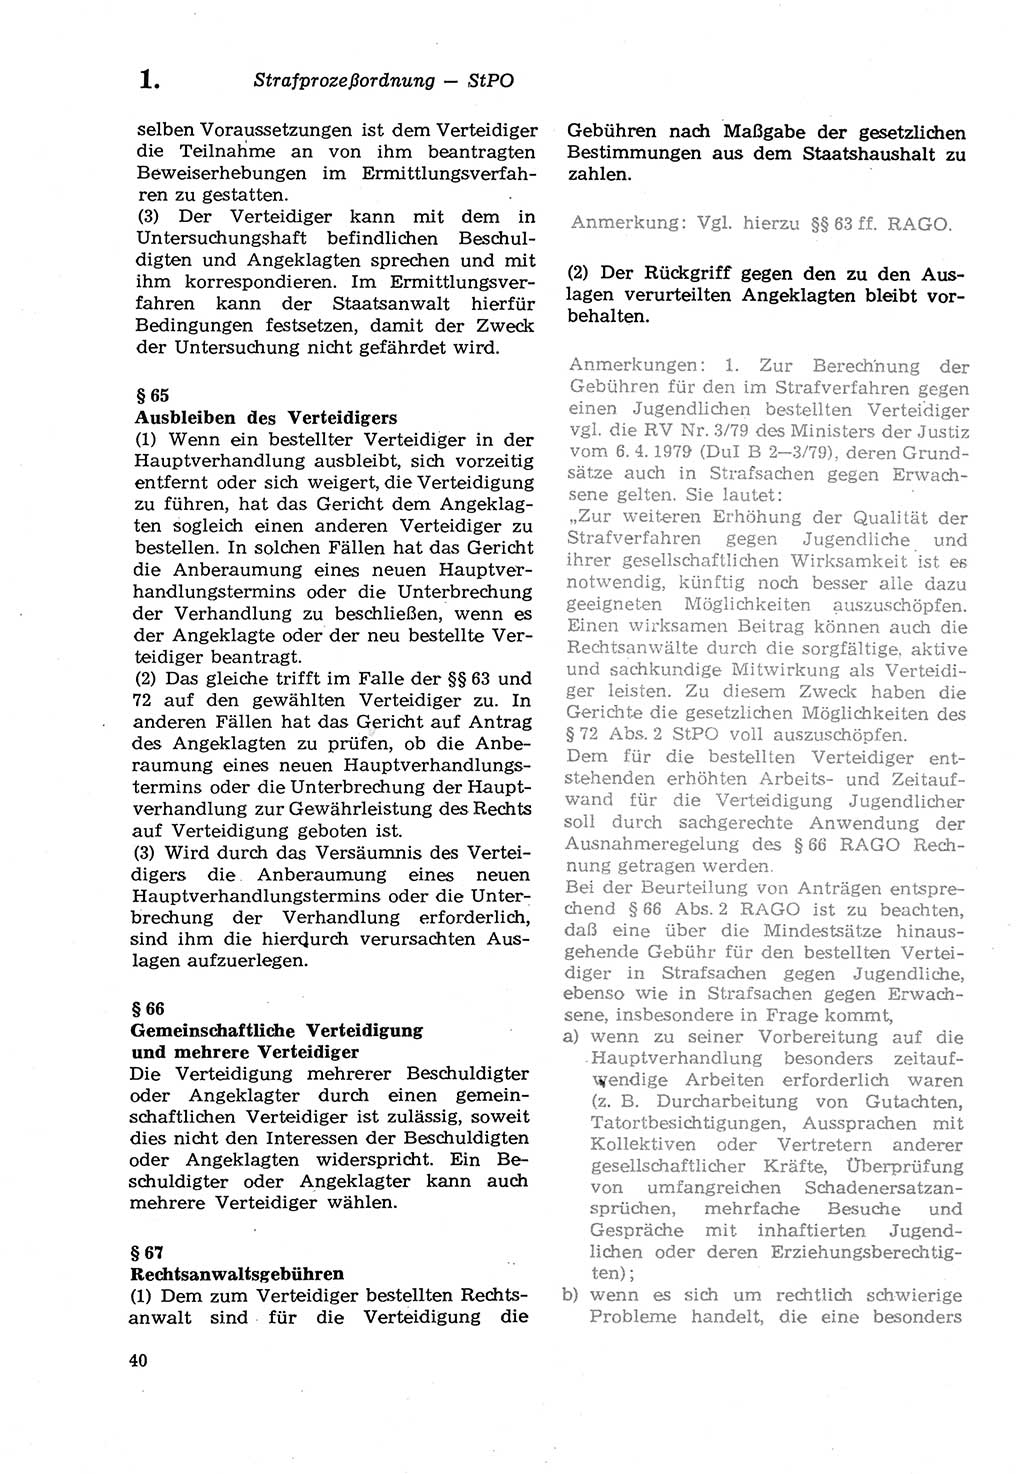 Strafprozeßordnung (StPO) der Deutschen Demokratischen Republik (DDR) sowie angrenzende Gesetze und Bestimmungen 1979, Seite 40 (StPO DDR Ges. Best. 1979, S. 40)